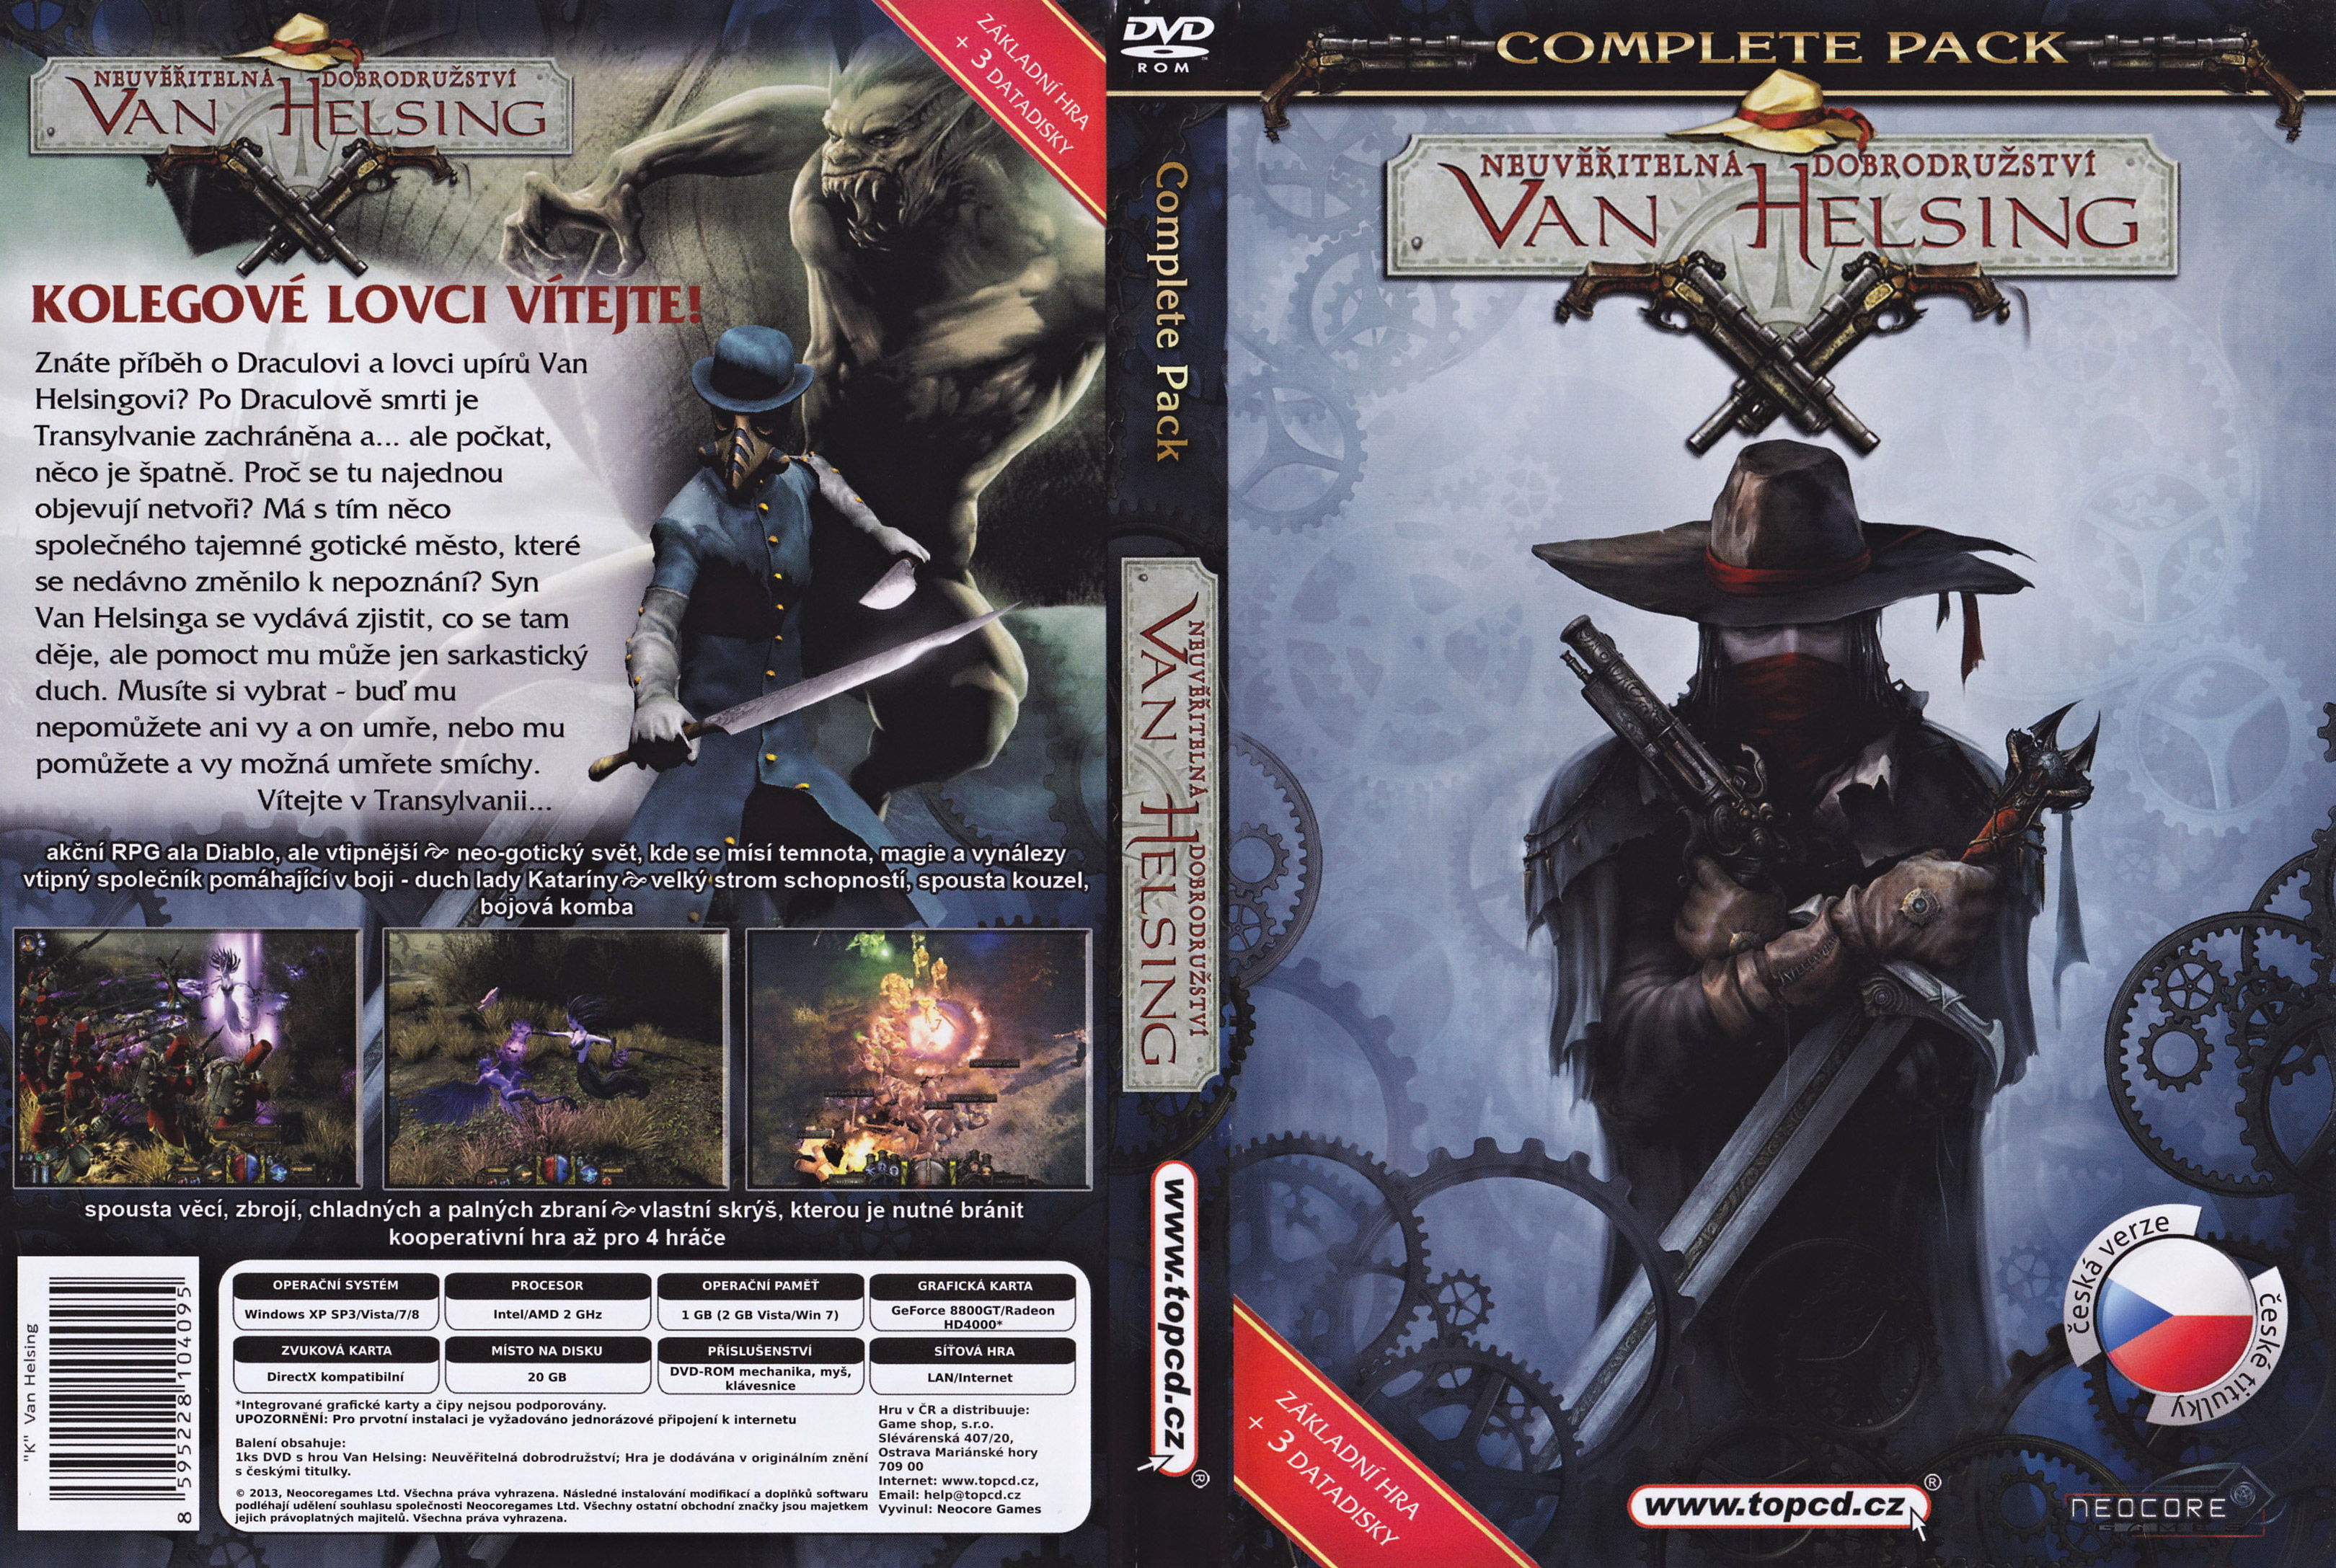 The Incredible Adventures of Van Helsing - Complete Pack - DVD obal